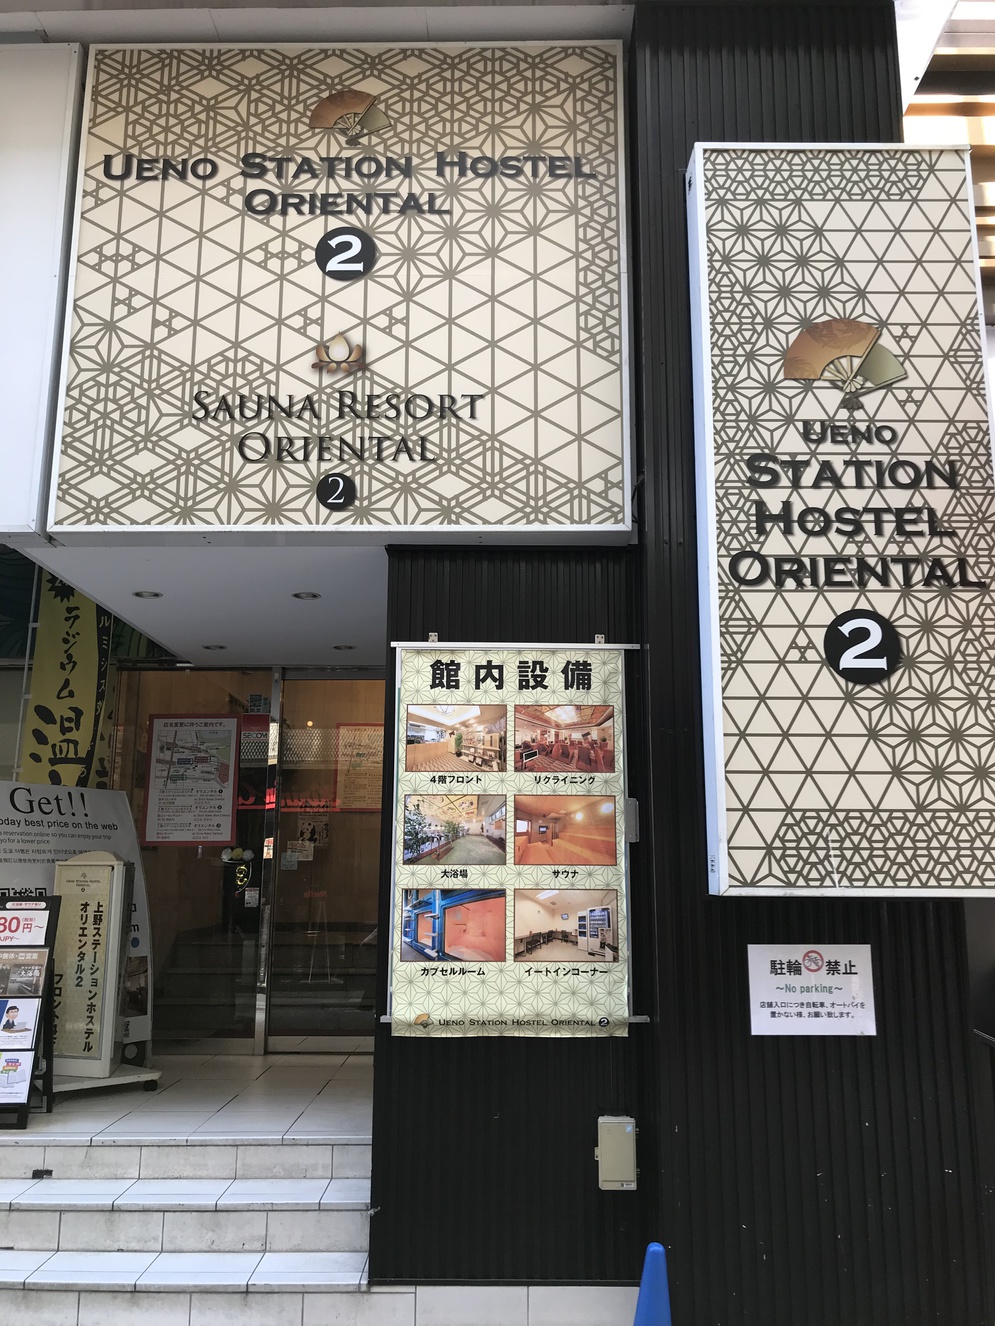 上野ステーションホステル オリエンタル2